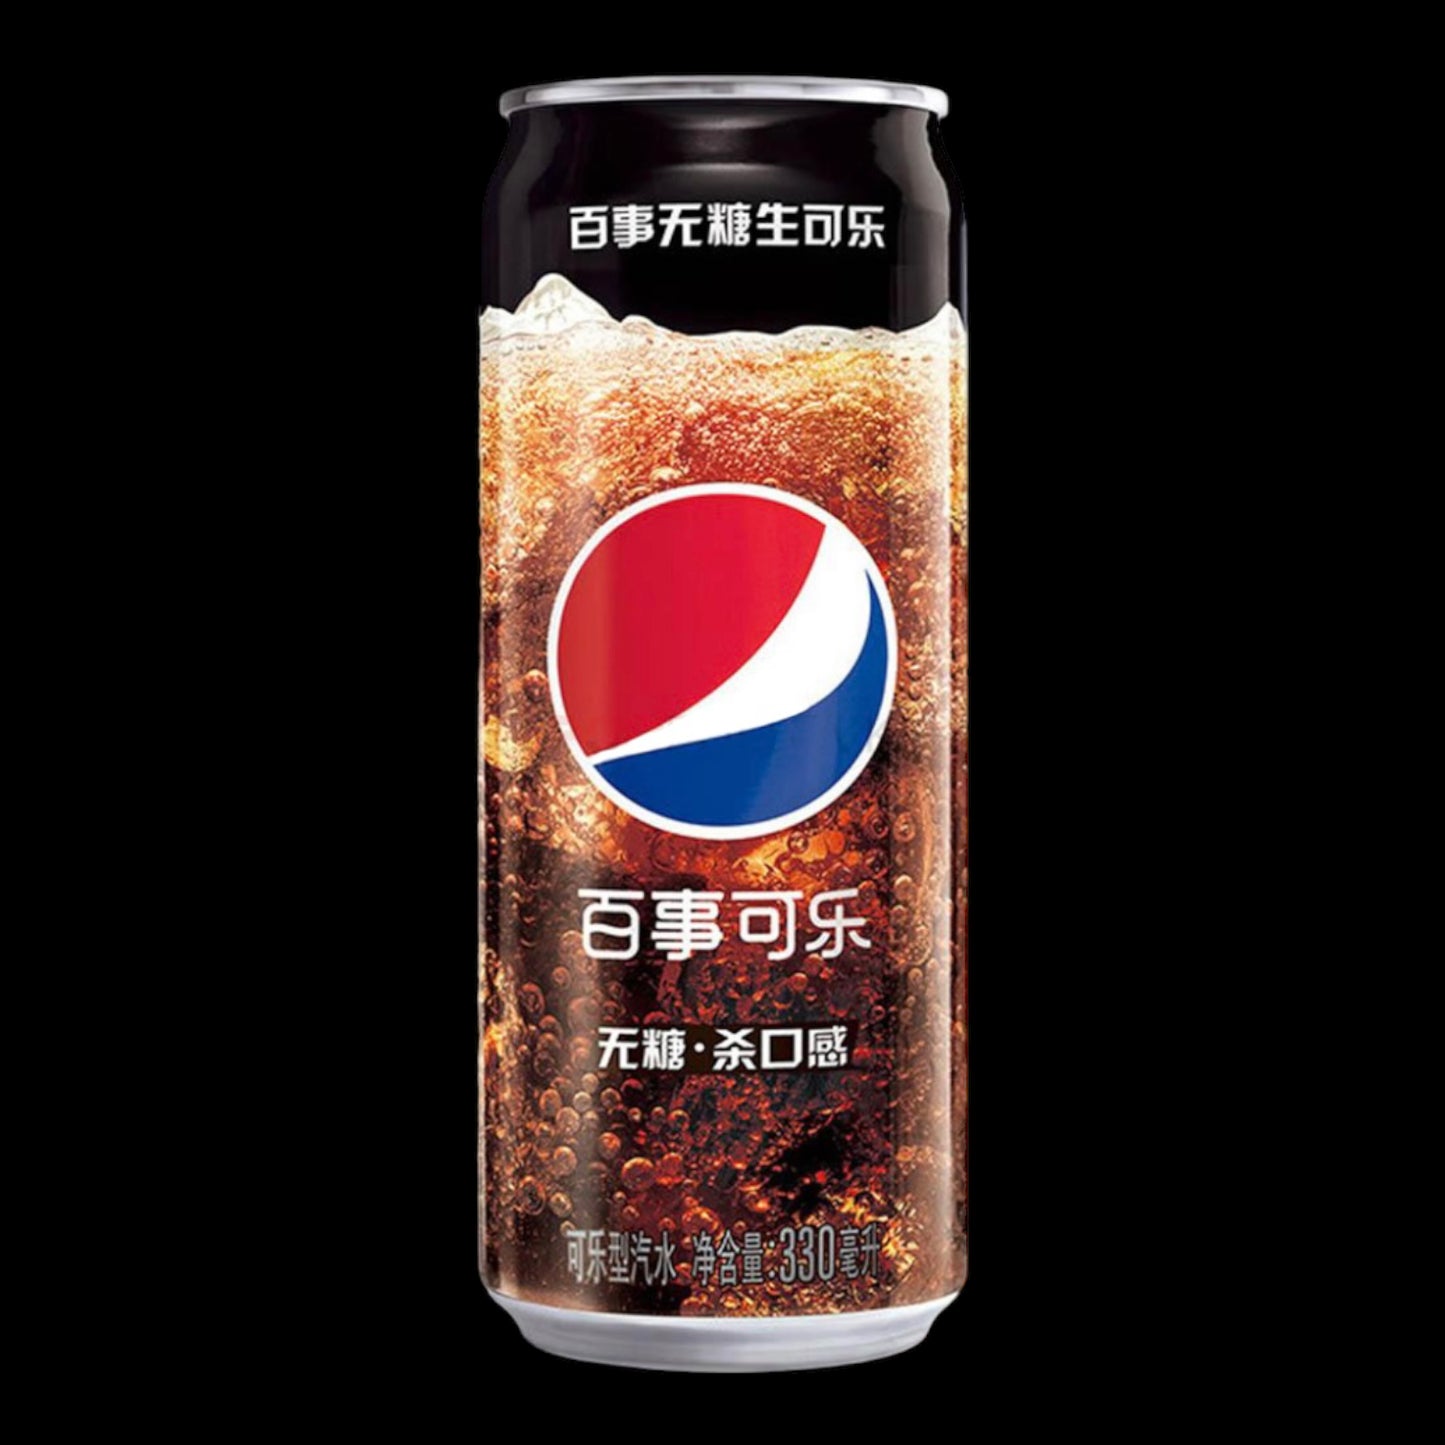 Pepsi Raw Cola Sugar Free 330ml